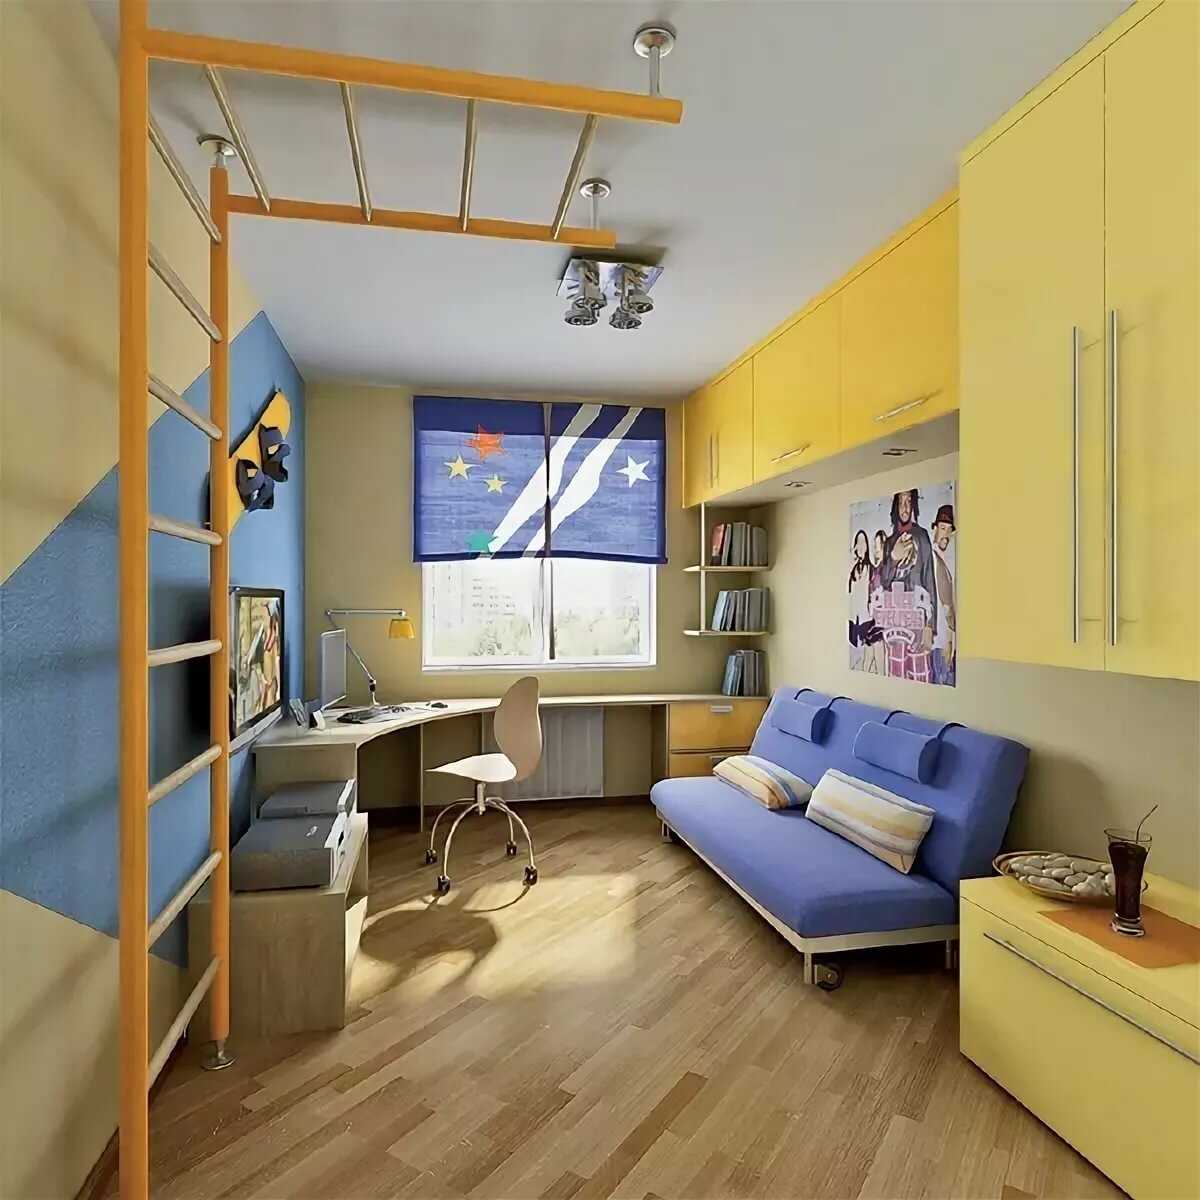 Дизайн узкой детской комнаты: методы корректировки тесного помещения